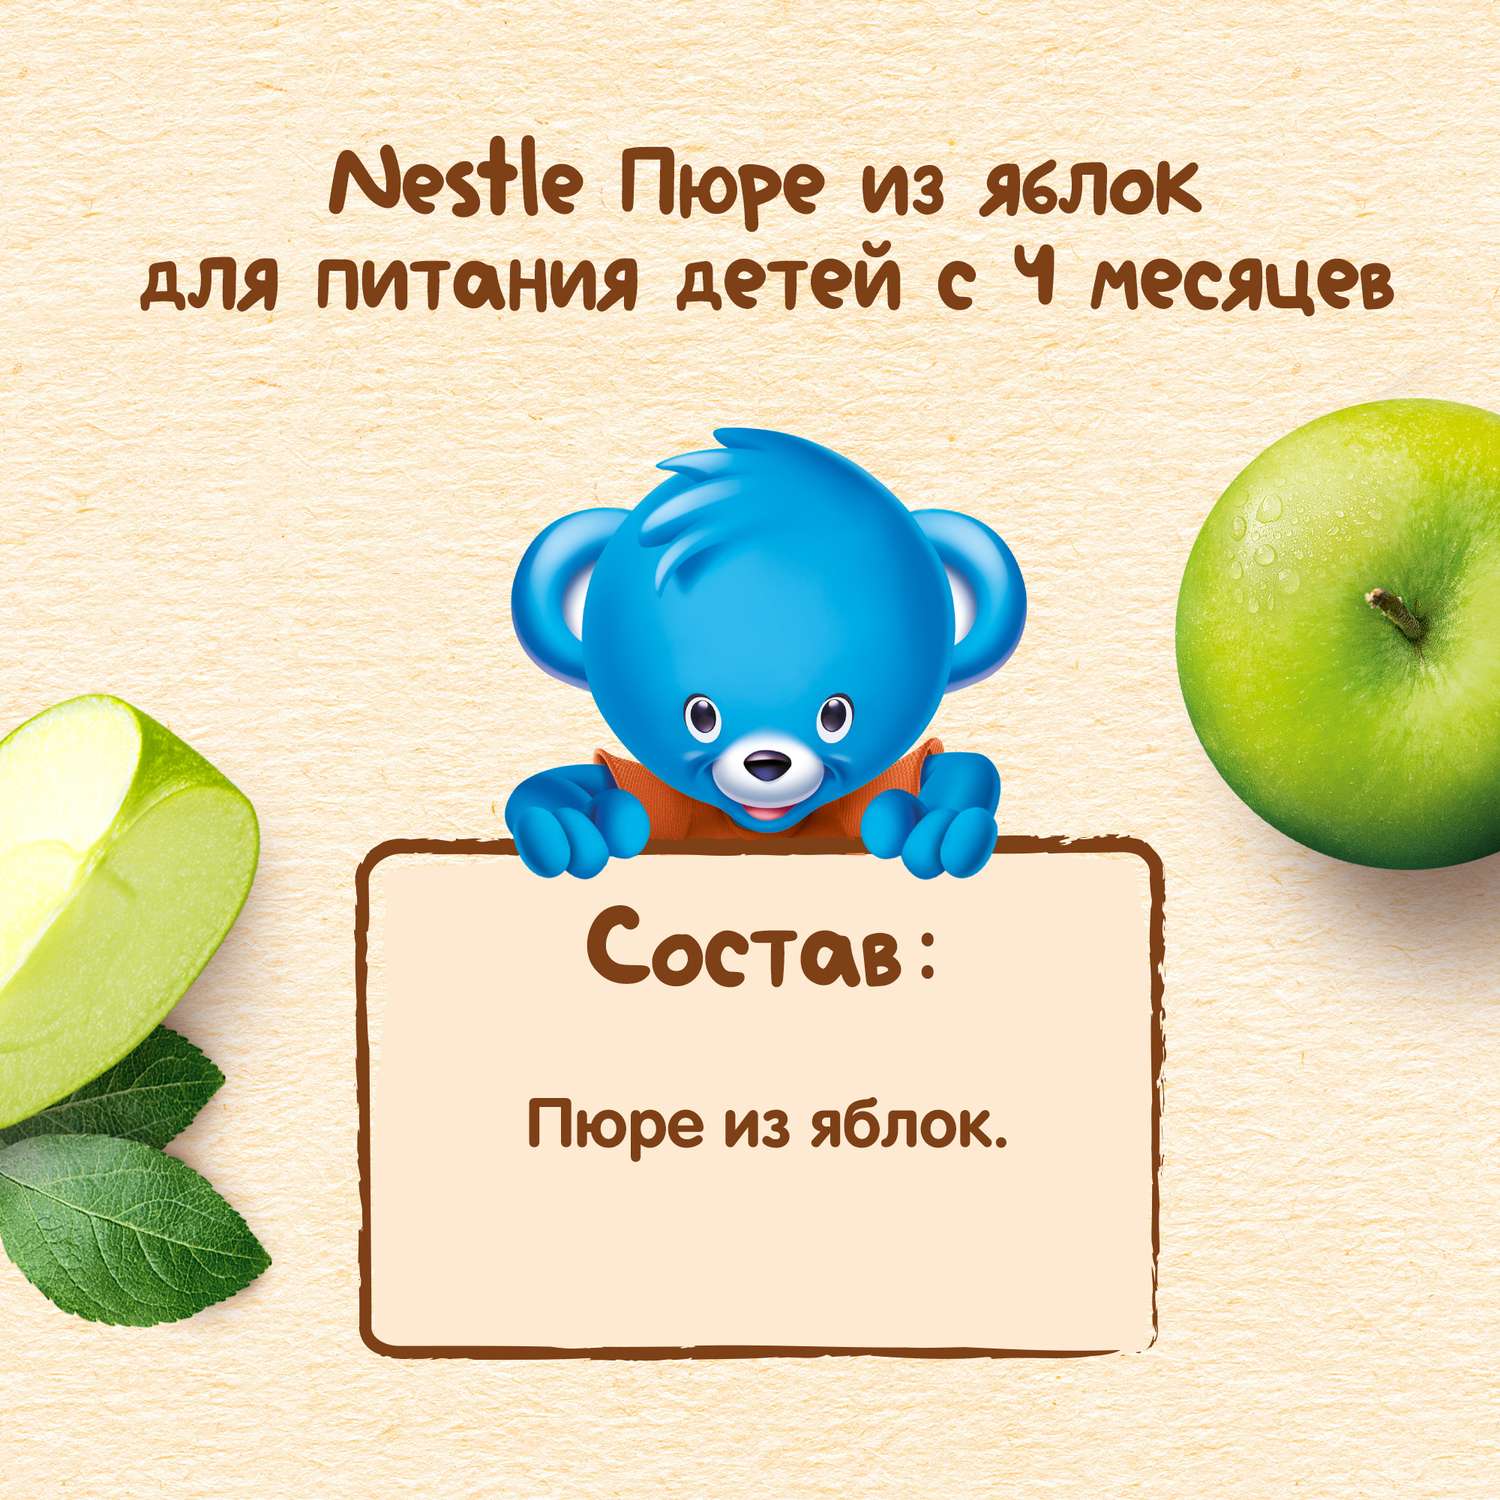 Пюре Nestle яблоко 90г с 4месяцев - фото 7